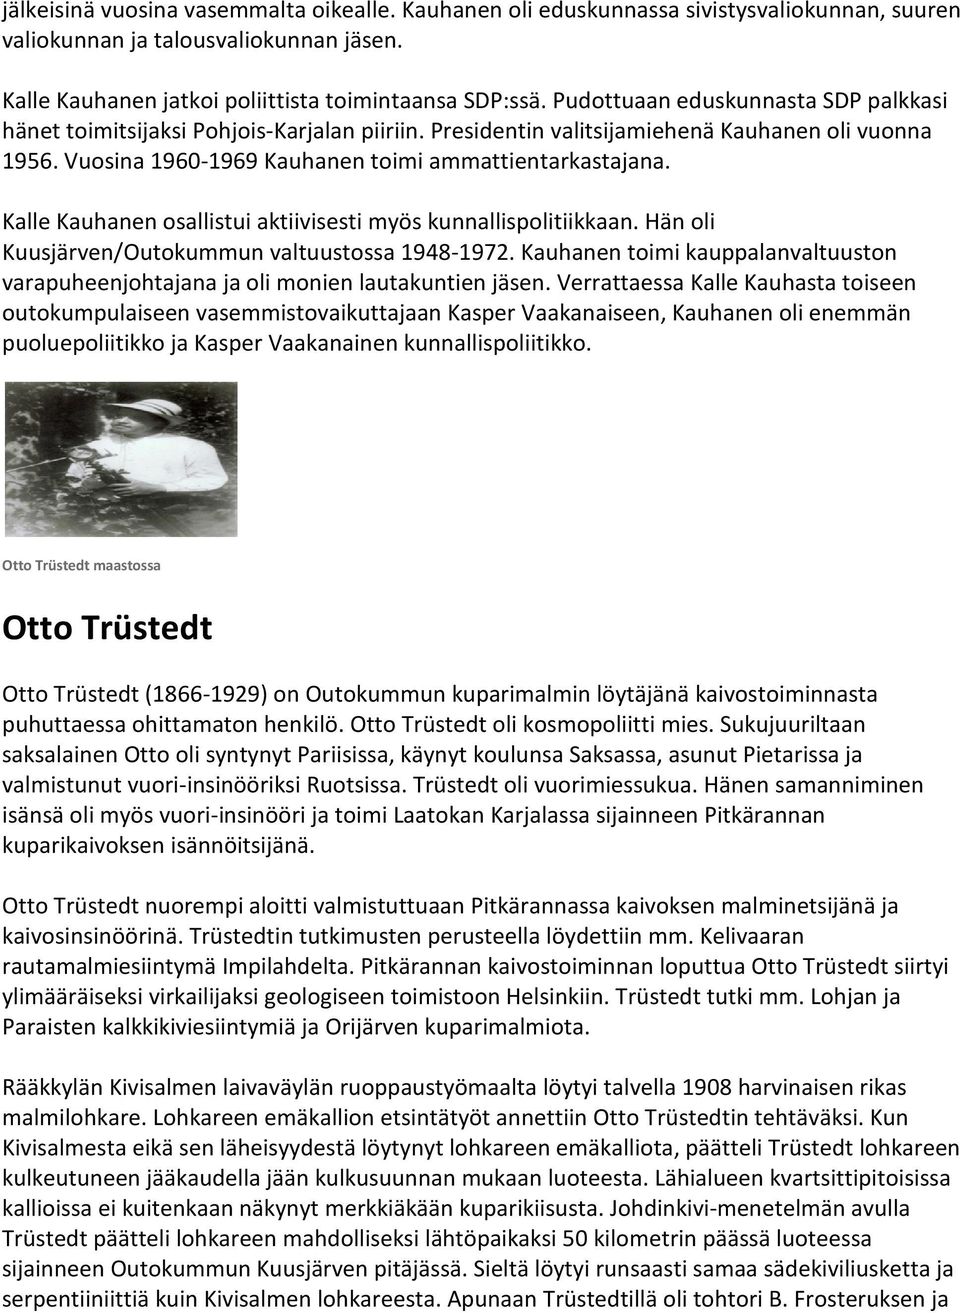 Kalle Kauhanen osallistui aktiivisesti myös kunnallispolitiikkaan. Hän oli Kuusjärven/Outokummun valtuustossa 1948-1972.